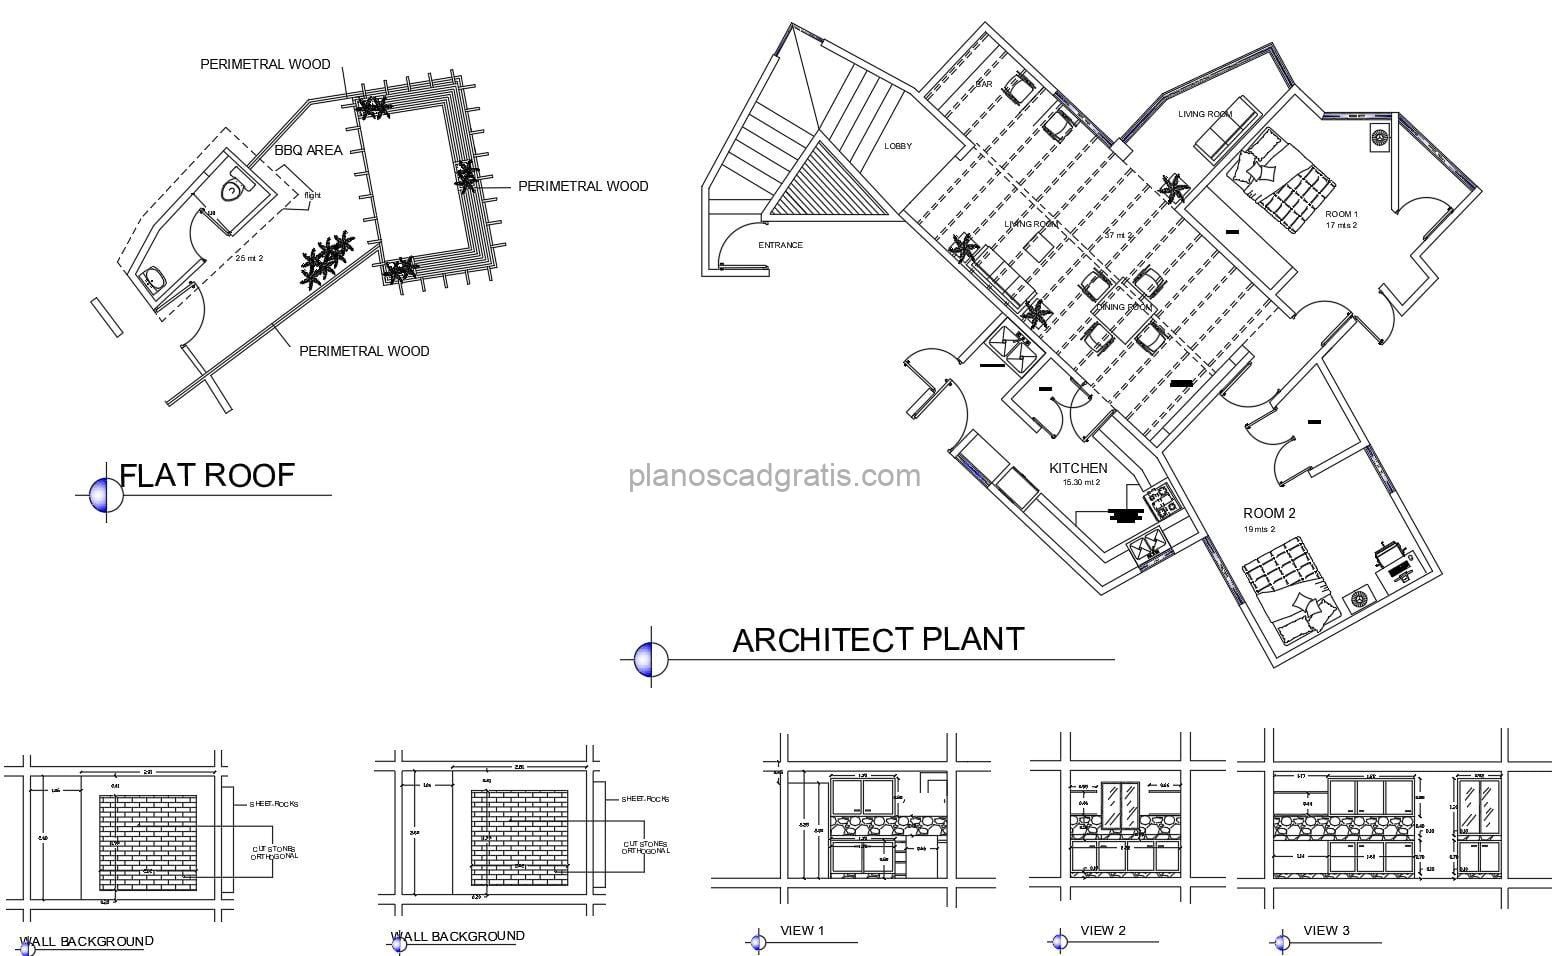 planos de casa campestre con area de bbq en el techo, planos con dimensiones en formato dwg de autocad para descarga gratis